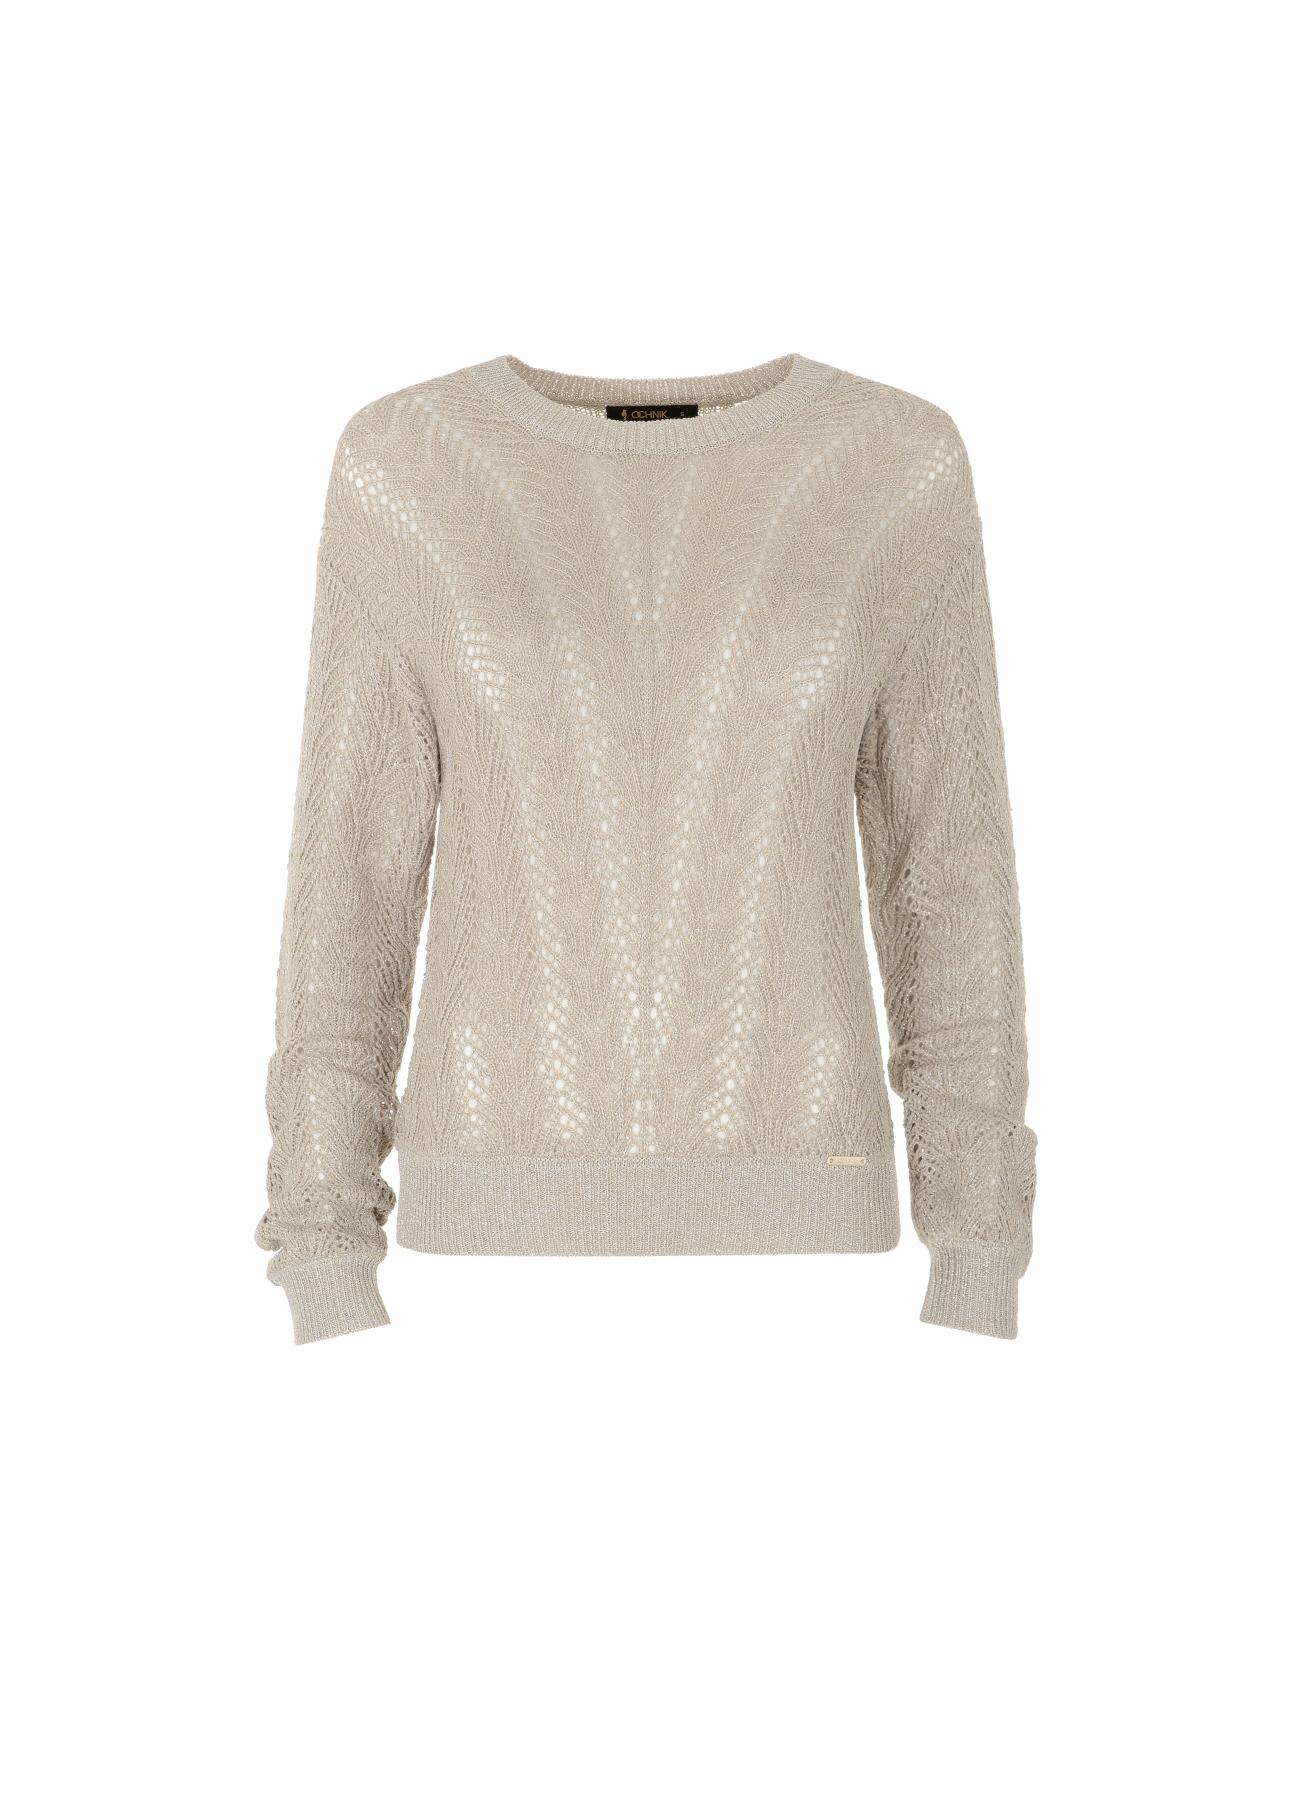 Beżowy ażurowy sweter damski SWEDT-0159-81(W22)-04